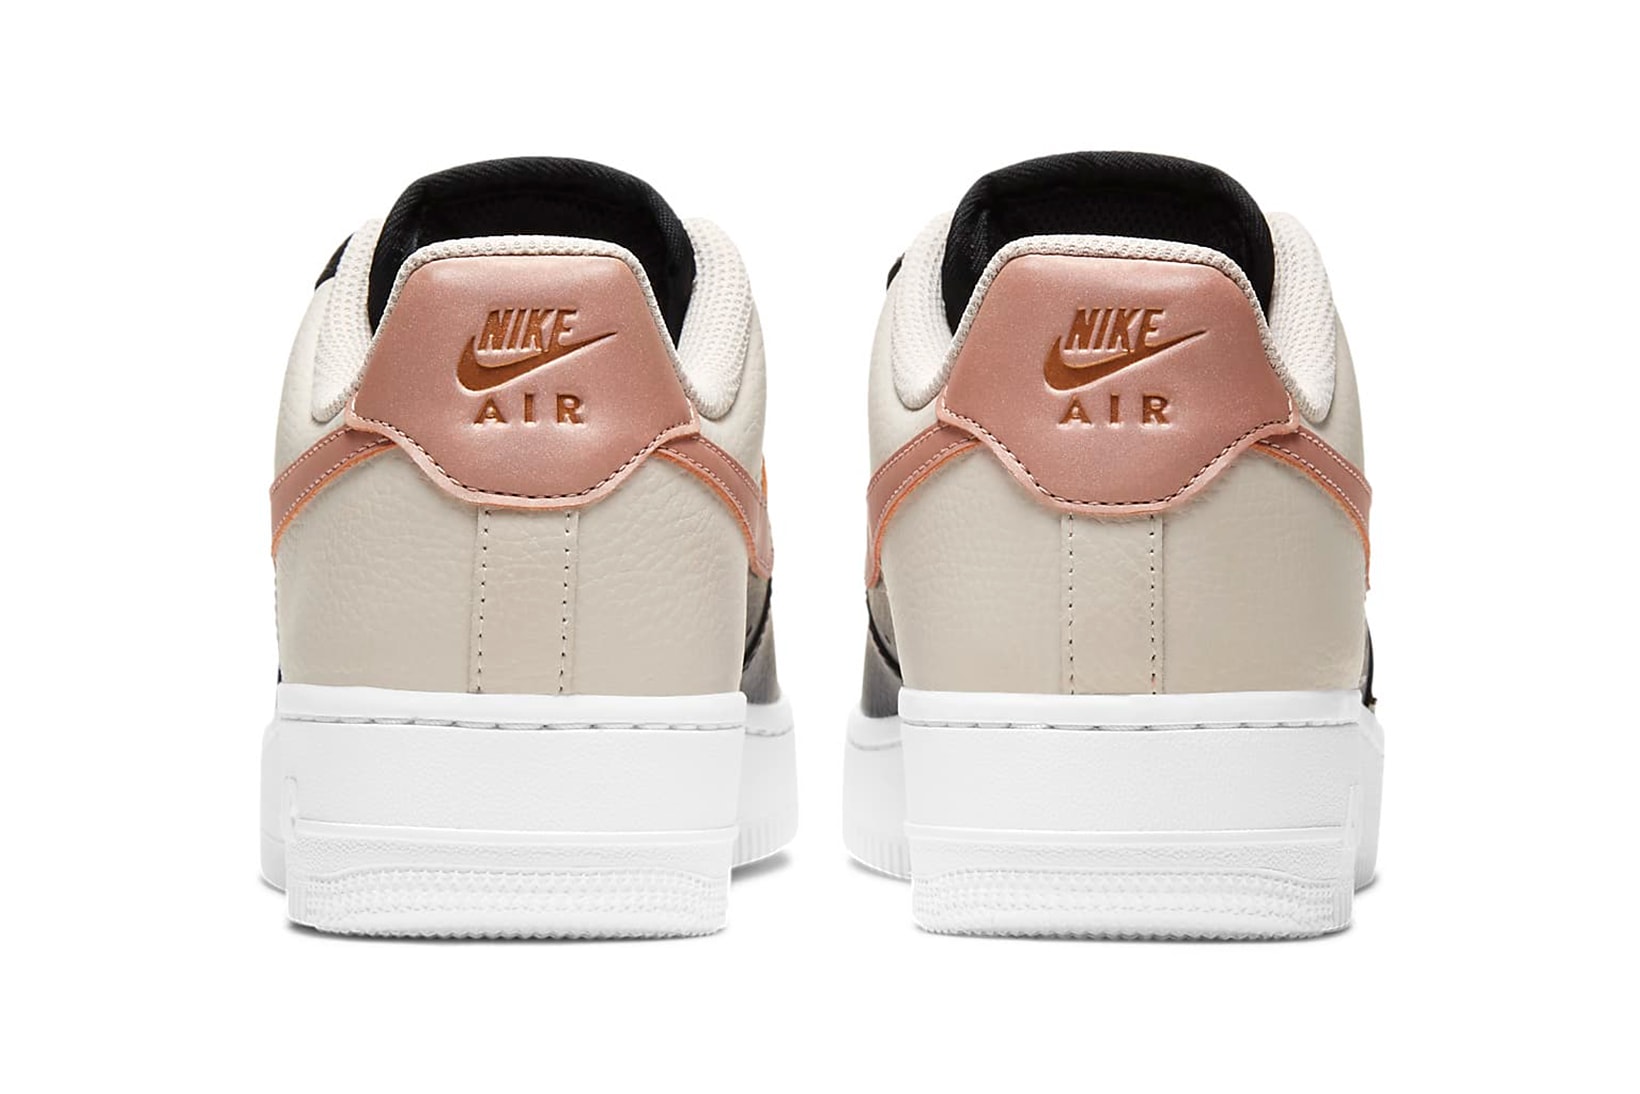 nike air force 1 07 womens sneakers black pink beige white colorway sneakerhead footwear shoes